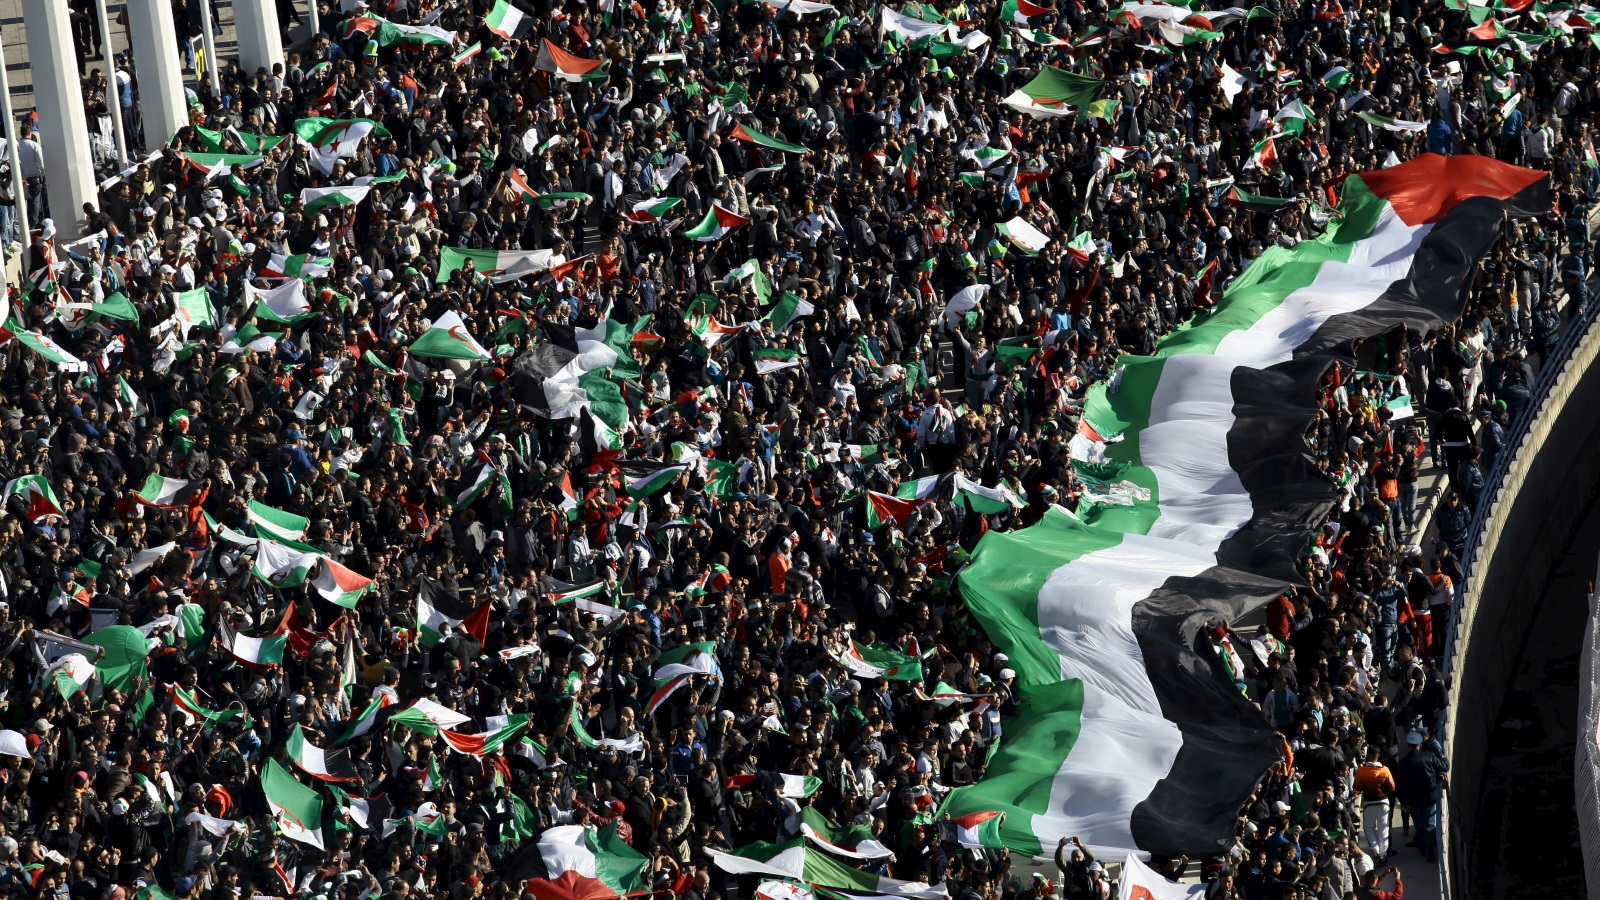 انتفضت الجزائر في سابقة لها من أجل القدس، واعتلت الأعلام الفلسطينية، وقادت التنظيمات الطلابية المسيرات بالآلاف ونادوا على أن القدس عاصمة فلسطين وستبقى عاصمتها، ولكن ماذا بعد كل هذا؟